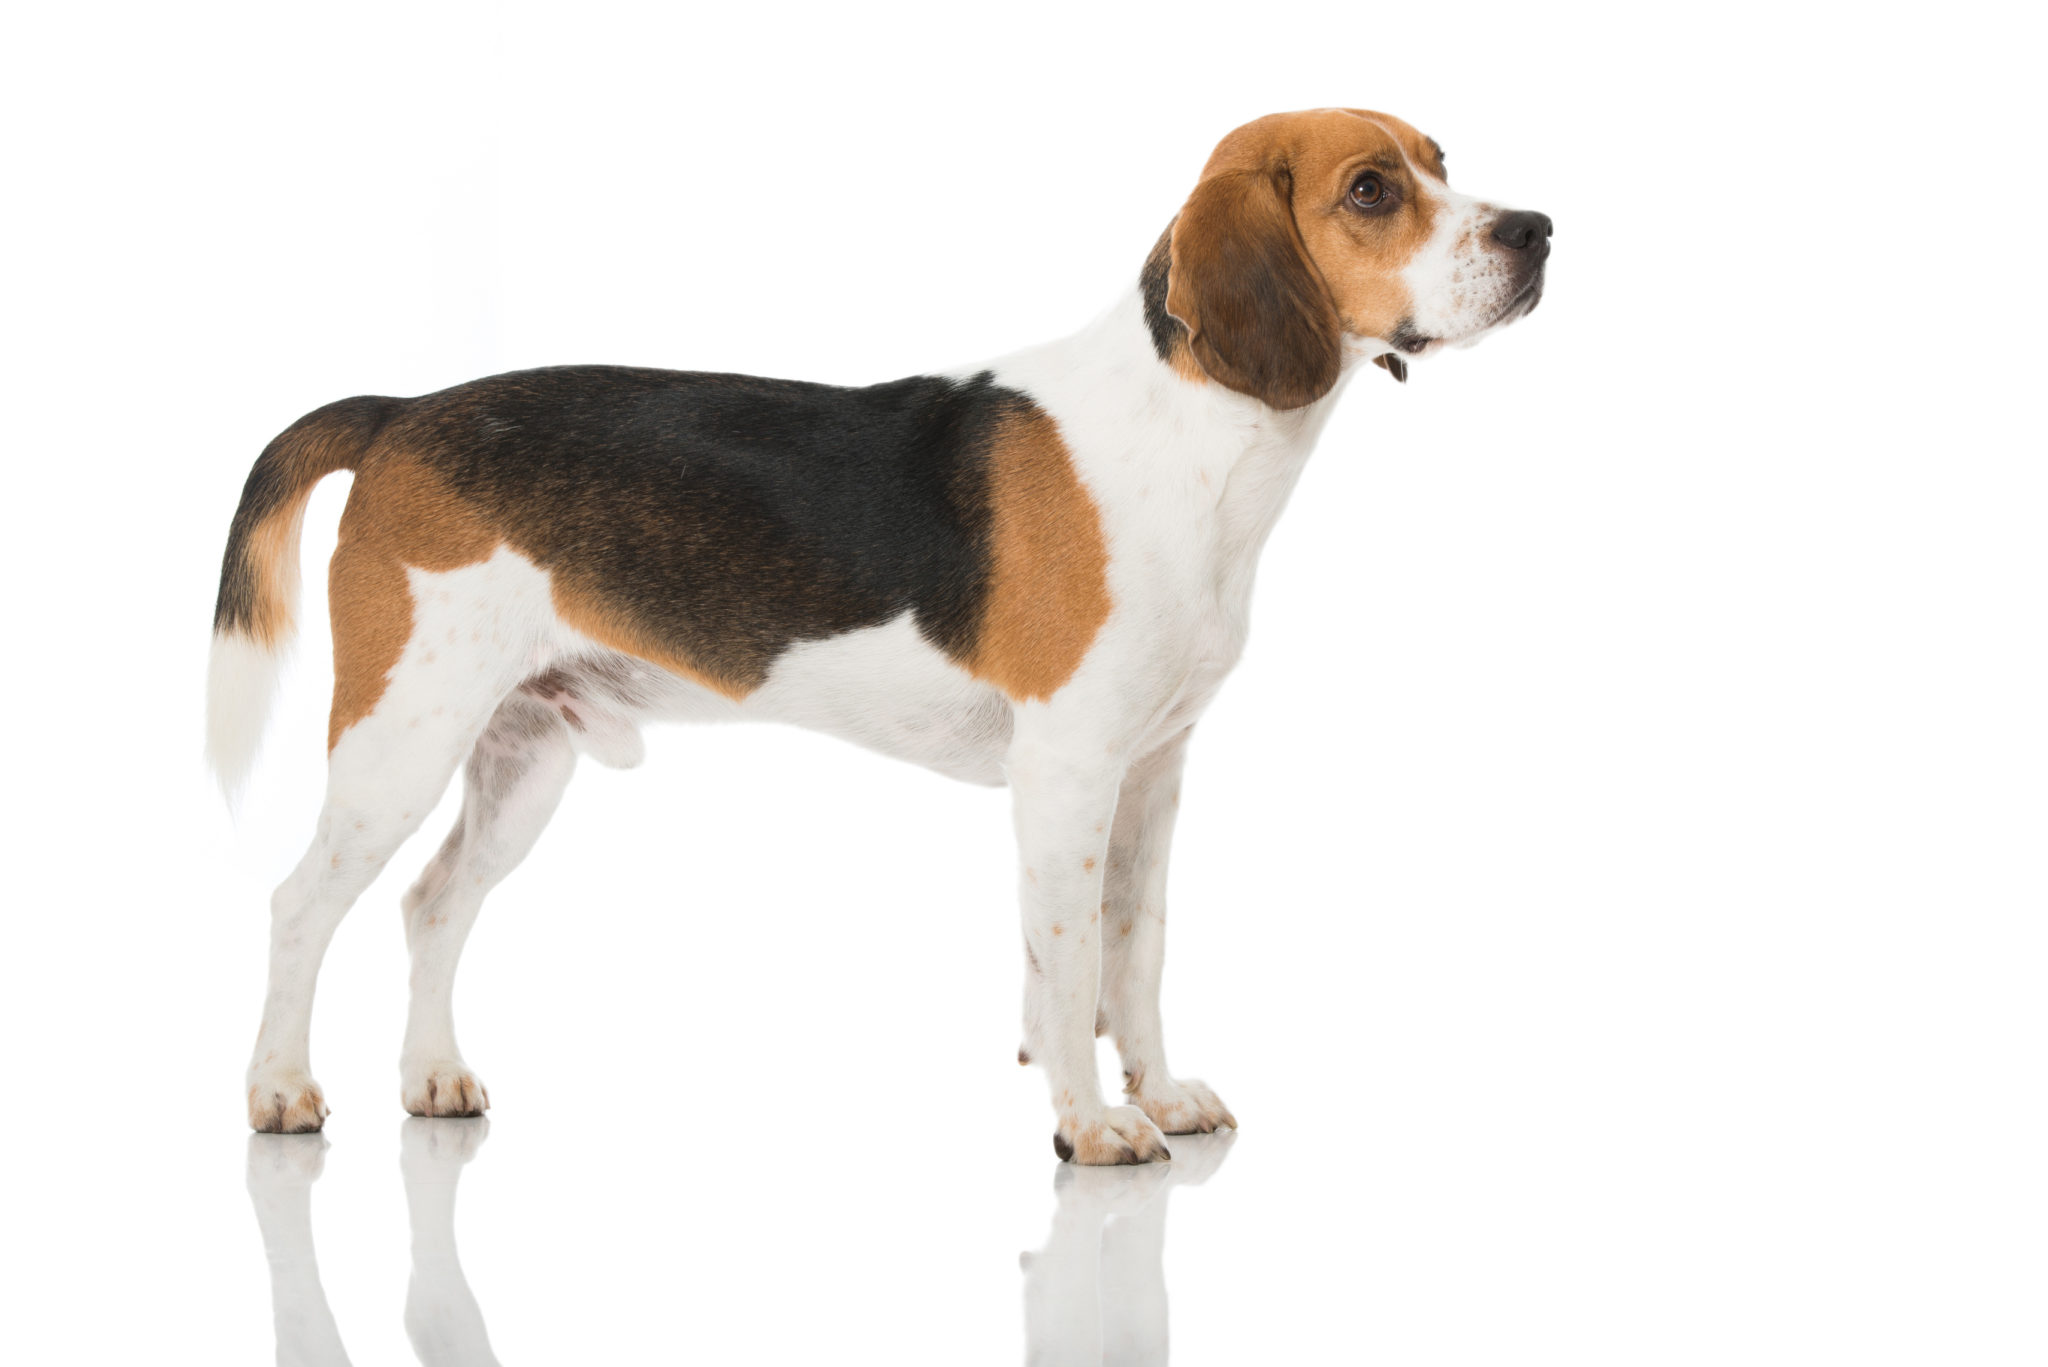 sirene biologie Aquarium Beagle - Leer meer over dit middelgrote hondenras | zooplus